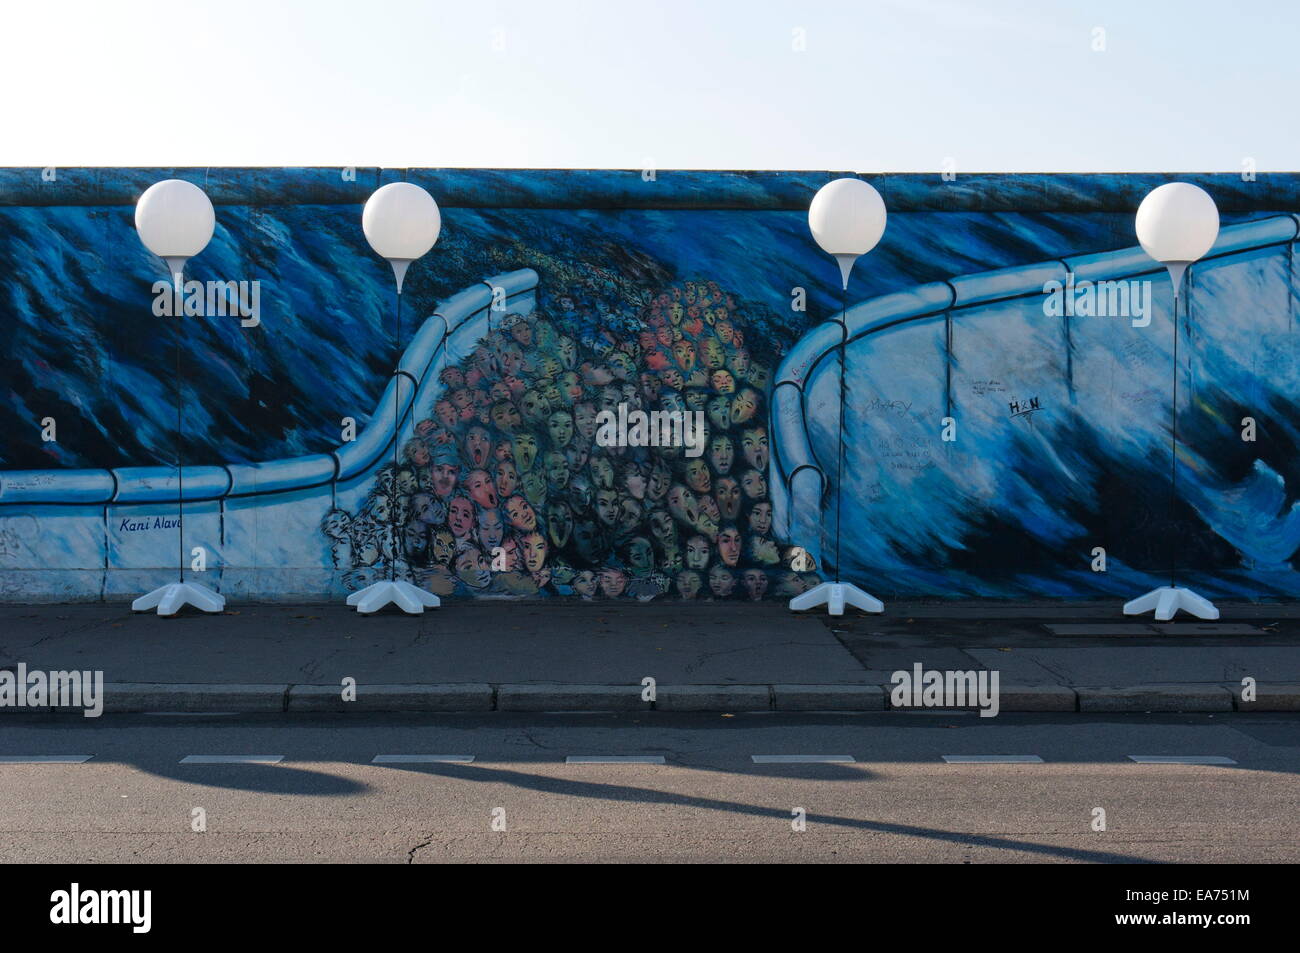 Berlin, Allemagne. Nov 7, 2014. La "lumière" de la frontière s'étend le long de la East Side Gallery, un espace d'art en plein air et le plus long tronçon restant du mur de Berlin. Pour le 25e anniversaire de la chute du Mur de Berlin, des milliers de ballons blanc retracer le chemin du mur de Berlin à 15.3km au coeur de la ville. L 'Lichtgrenze' ou 'Light' à la frontière est une installation temporaire et restera du 7 au 9 novembre. Au cours d'une cérémonie peu avant 7h, le 9 novembre, les ballons seront libérés dans le ciel nocturne. © Harald Franzen/ZUMA/Alamy Fil Live News Banque D'Images